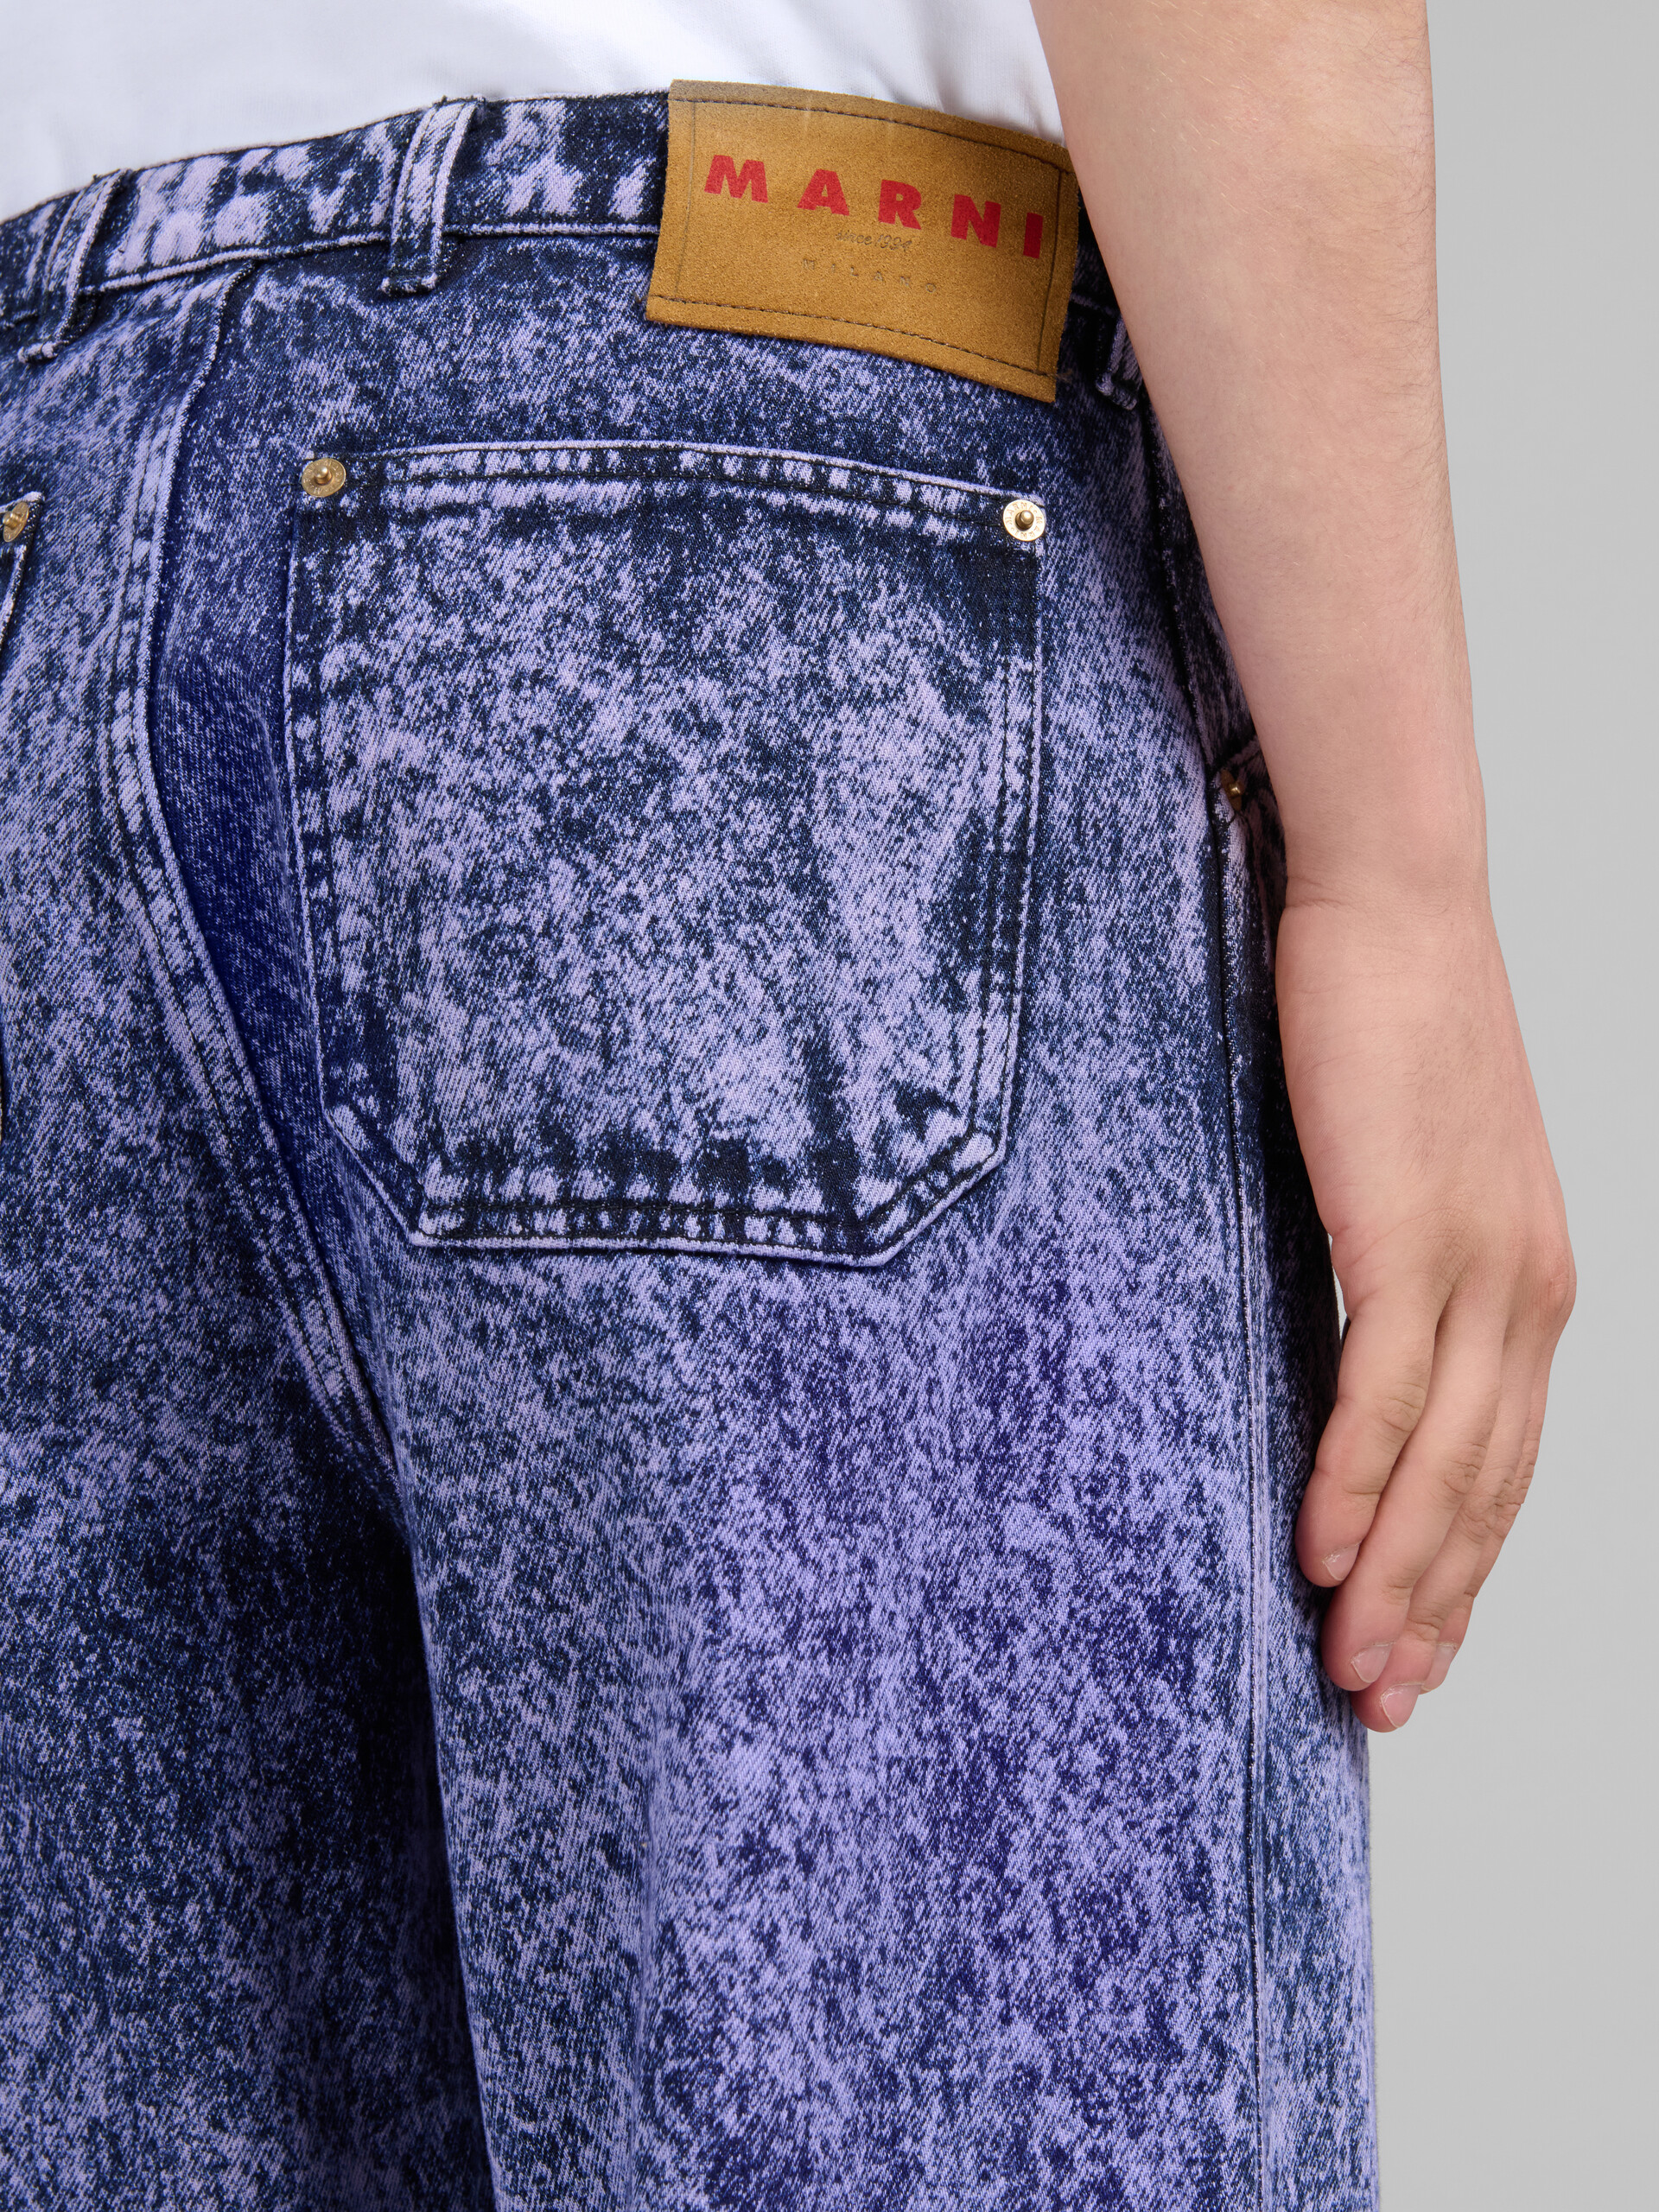 Jeans in denim blu effetto marmorizzato - Pantaloni - Image 4